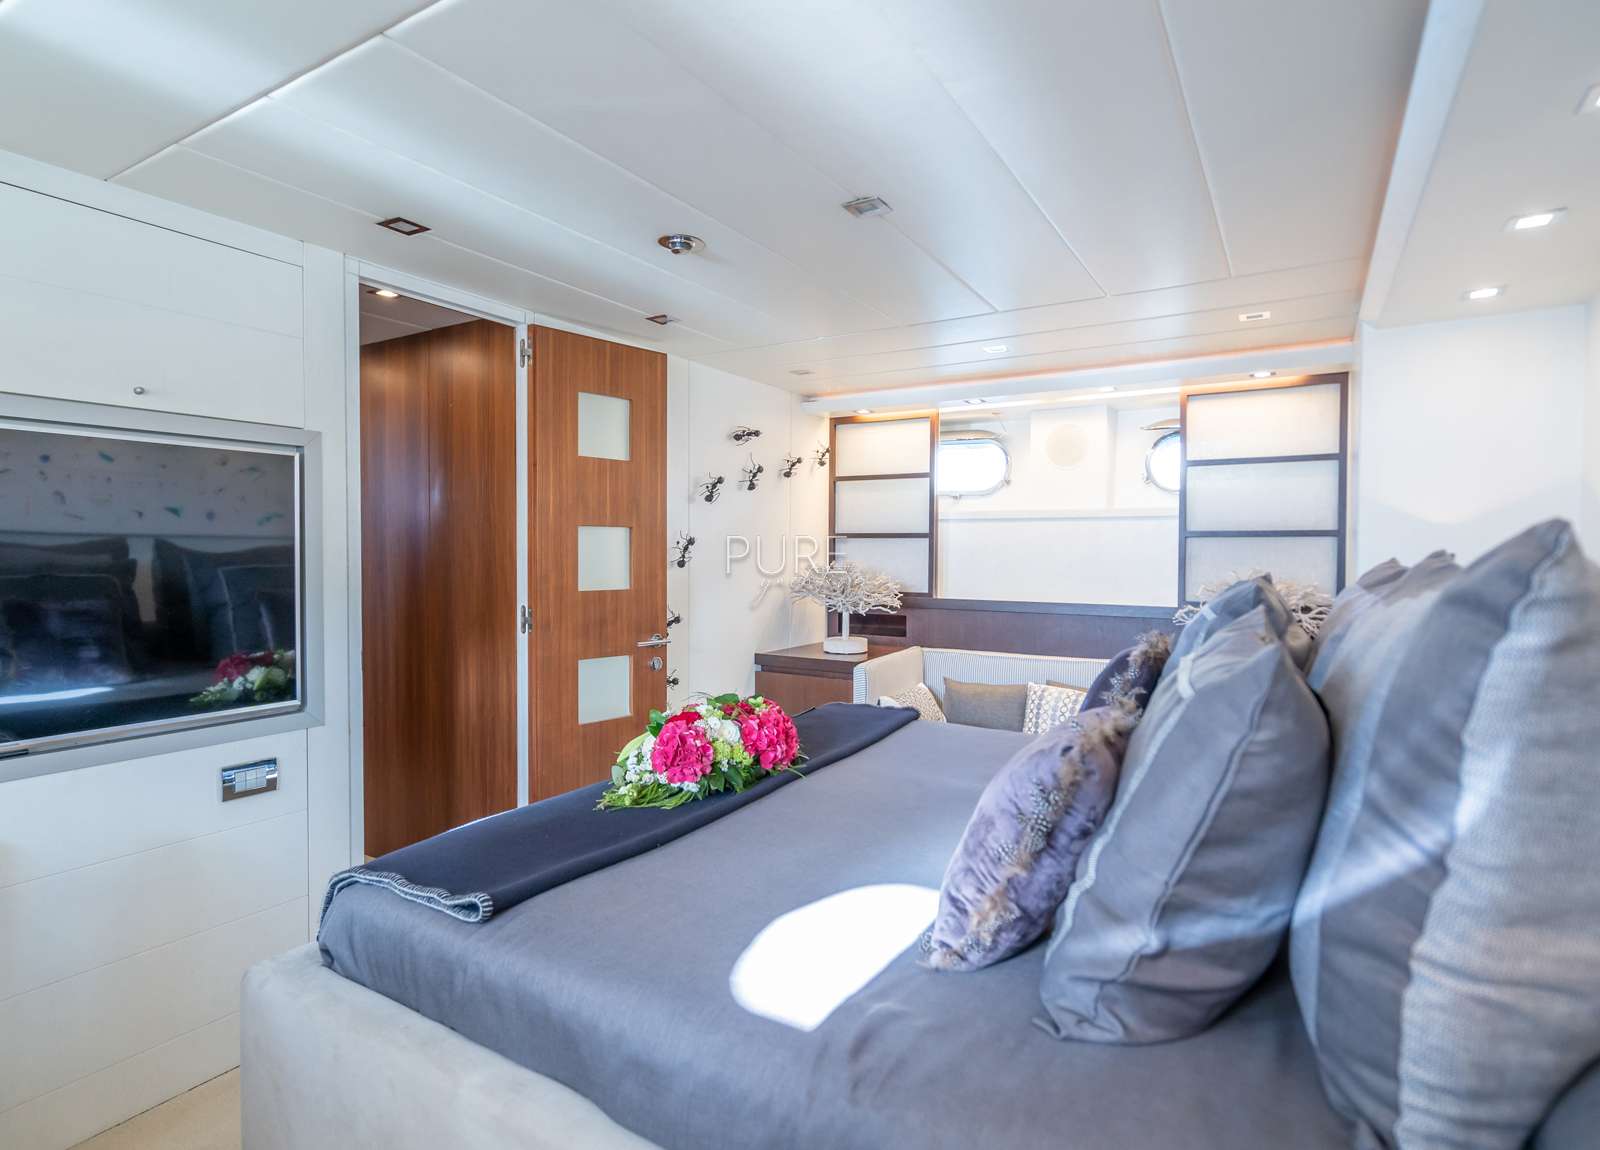 vip kabine luxusyacht lex maiora 26m balearics